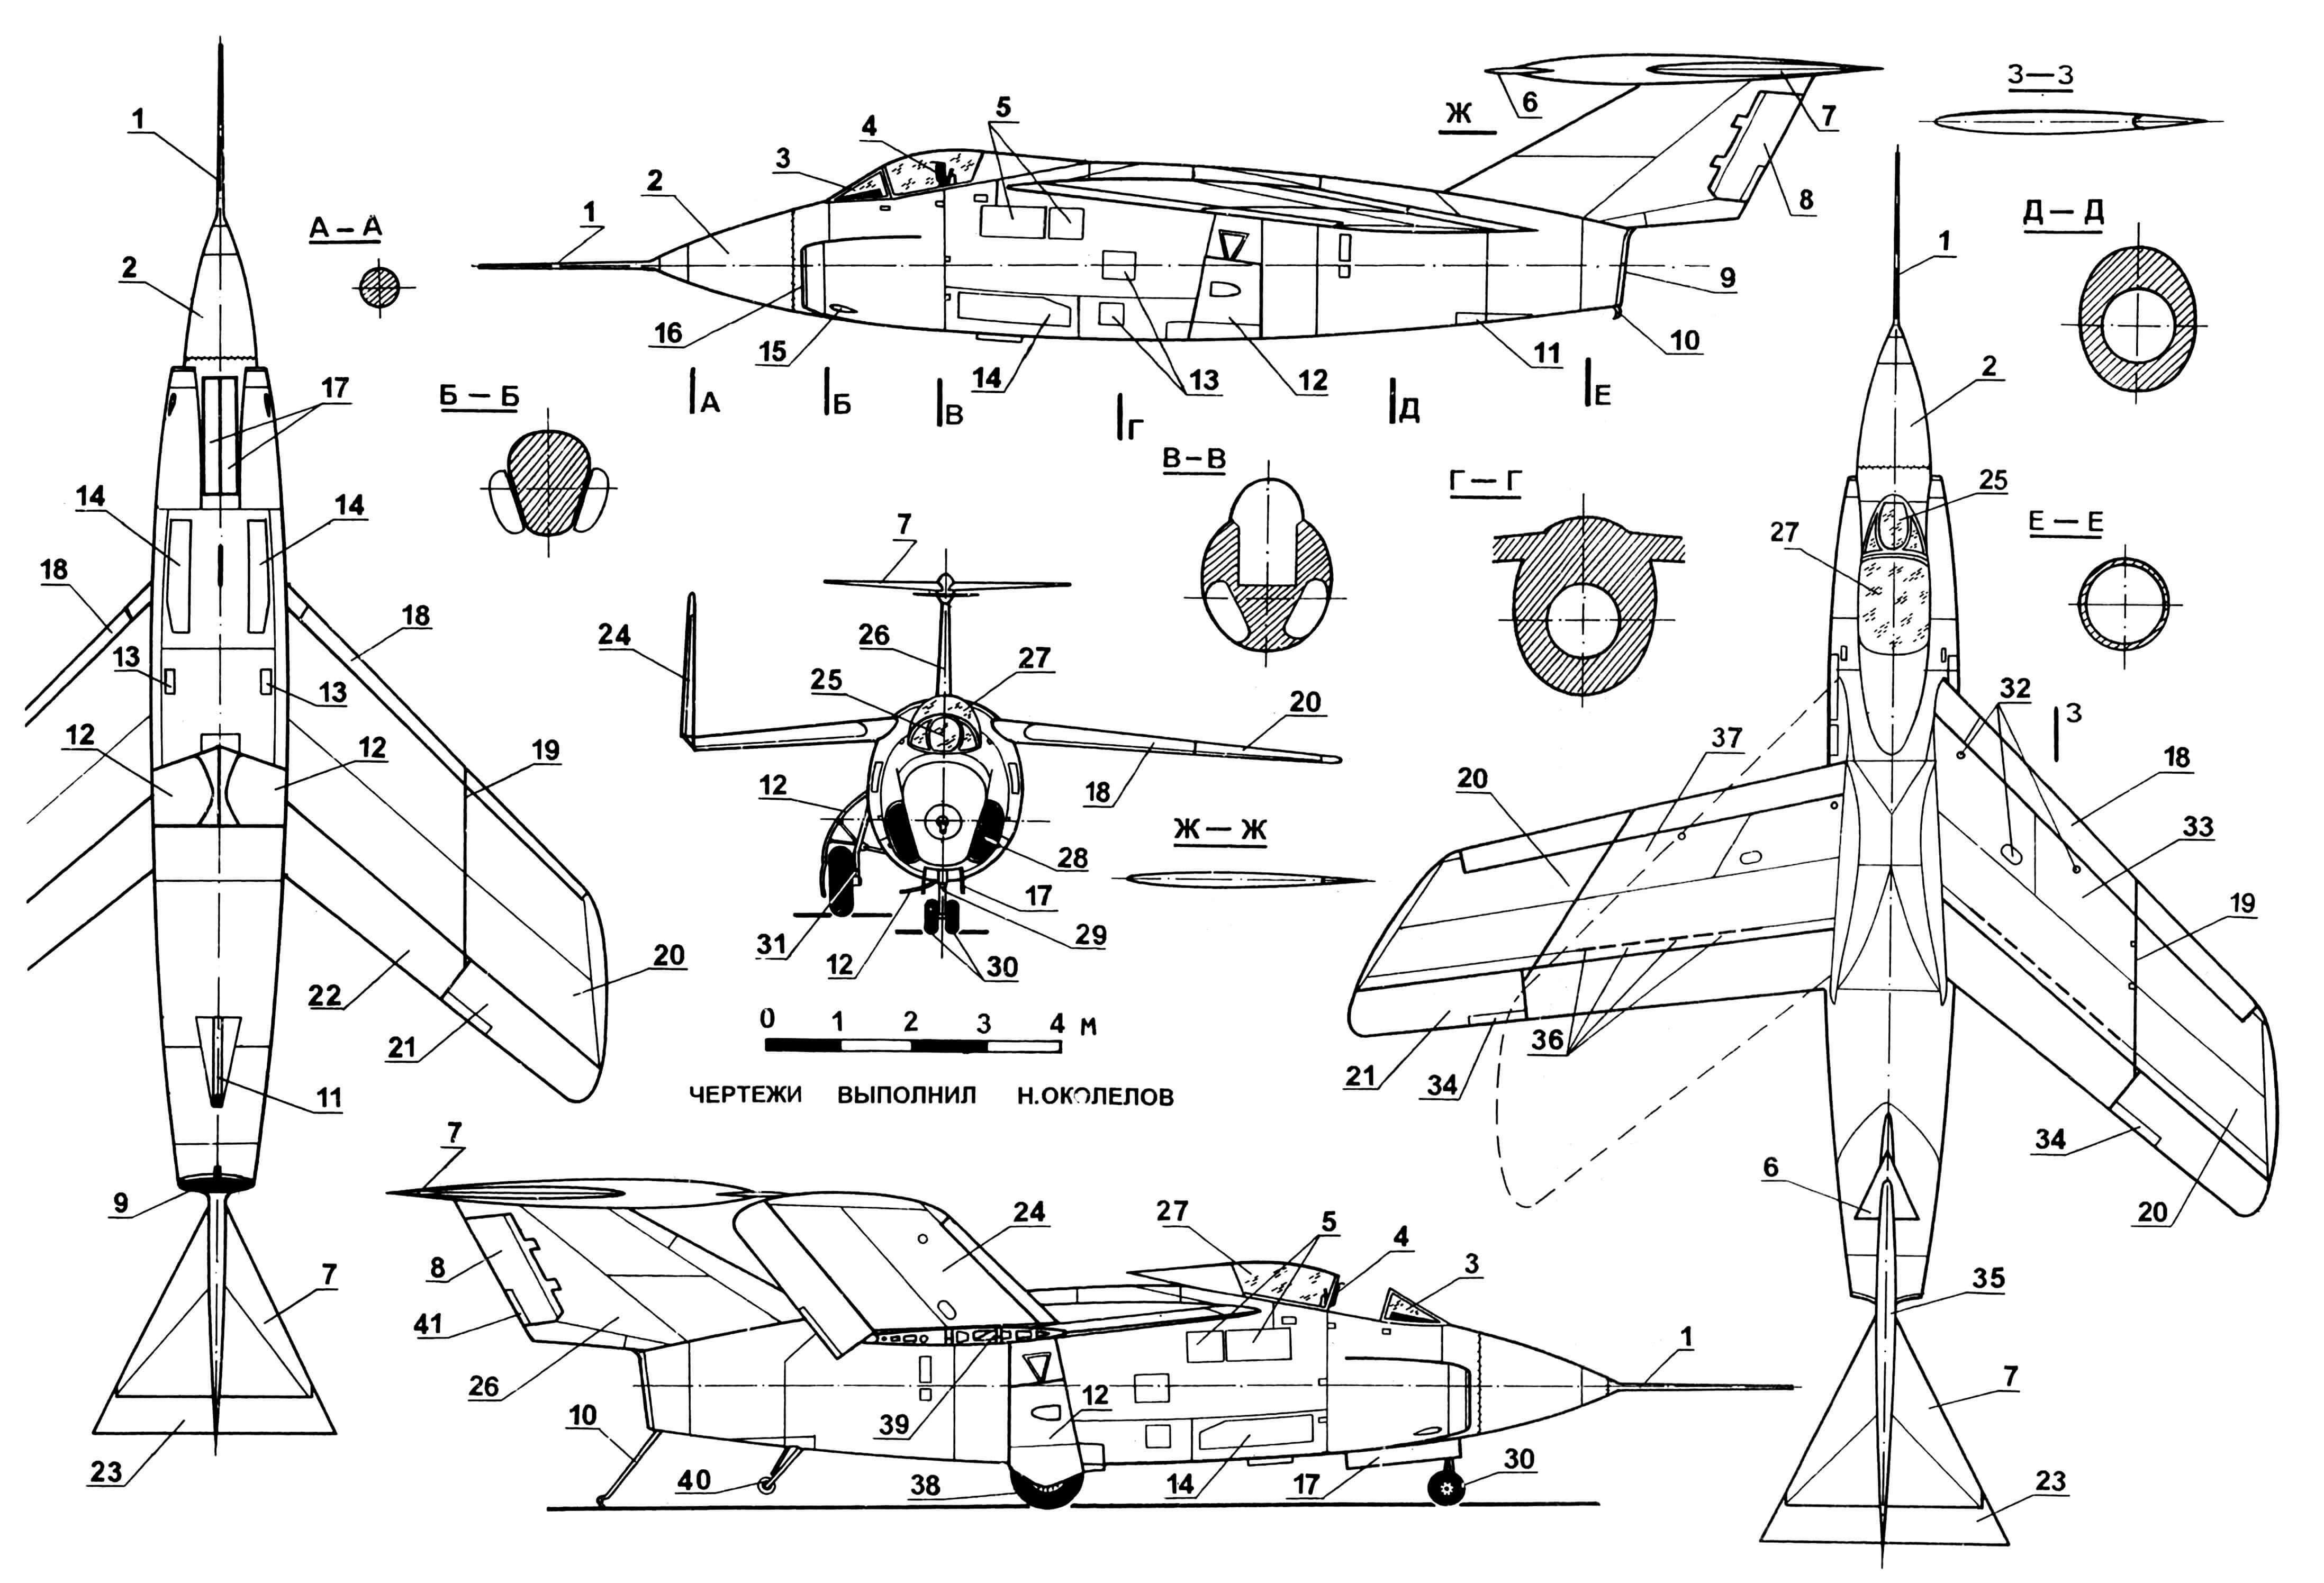 Опытный самолет F10F «Ягуар»: 1 — приемник воздушного давления; 2 — обтекатель РЛС; 3 — козырек фонаря кабины; 4 — кресло катапультное; 5,13,32 — лючки эксплуатационные; 6 — поверхность стабилизирующая; 7 — стабилизатор; 8 — руль поворота; 9 — сопло двигателя; 10 — крюк тормозной; 11 — опора хвостовая в убранном положении; 12 — створки ниш основных стоек шасси; 14 — щитки тормозные, аэродинамические; 15 — амбразура левой пушки; 16 — кромка левого воздухозаборника; 17 — створки ниши носовой стойки шасси; 18 — предкрылки; 19 — линии складывания законцовок крыла; 20 — законцовки крыла; 21 — элерон; 22 — закрылок; 23 — руль высоты; 24 — законцовка крыла в сложенном положении; 25 — бронестекло; 26 — киль; 27 — часть фонаря сдвижная; 28 — канал воздухозаборника; 29 — стойка шасси носовая; 30 — колеса носовые; 31 — стойка шасси основная; 33 — крыло в положении максимальной стреловидности; 34 — триммеры; 35 — груз противофлаттерный; 36 — места установки интерцепторов; 37 — крыло в положении минимальной стреловидности; 38 — колесо основной стойки шасси; 39 — нервюра по линии складывания крыла, силовая; 40 — колесо хвостовой опоры; 41 — триммер руля поворота.